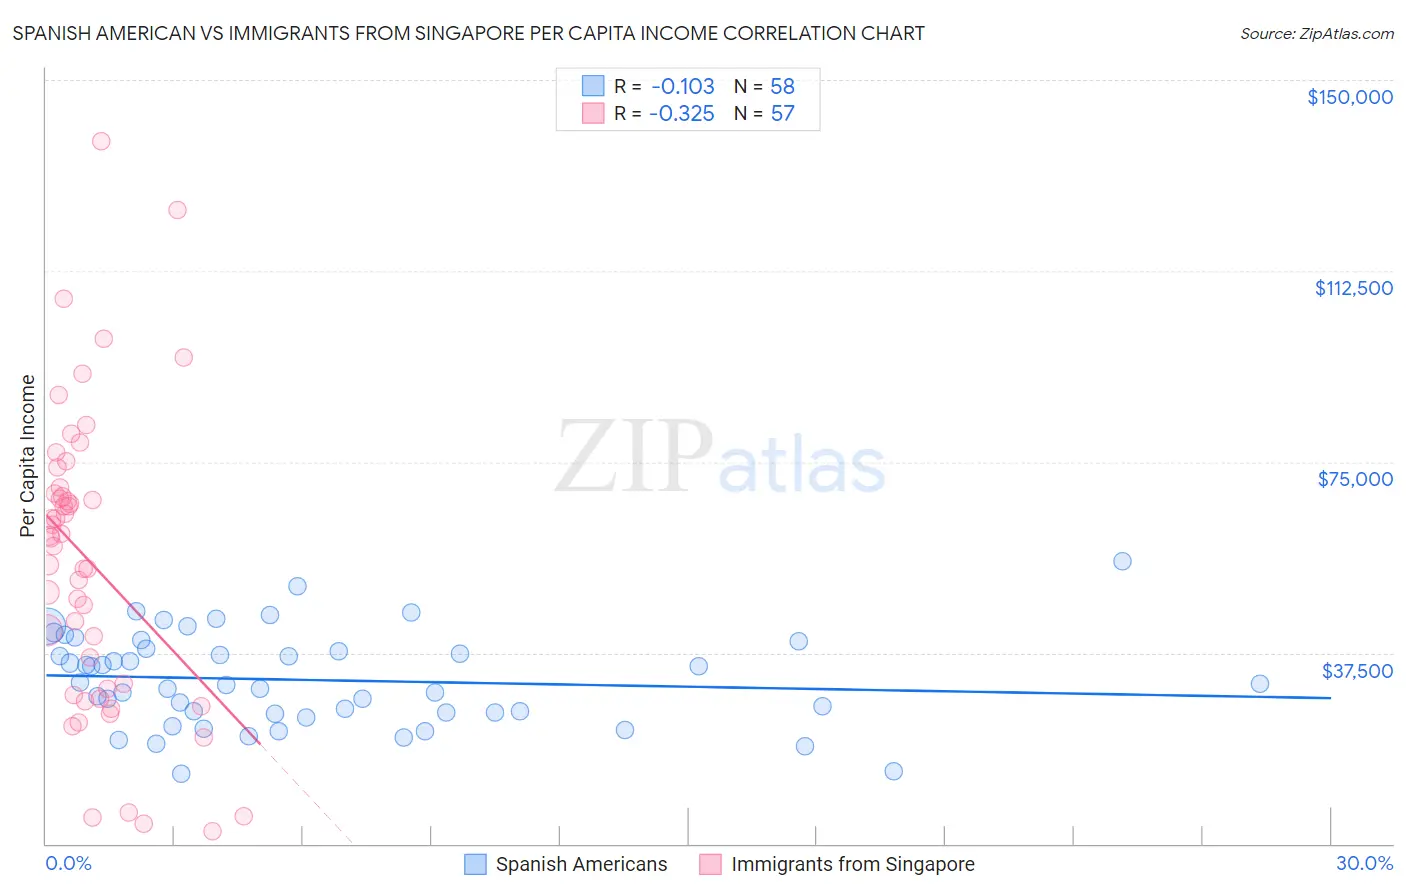 Spanish American vs Immigrants from Singapore Per Capita Income